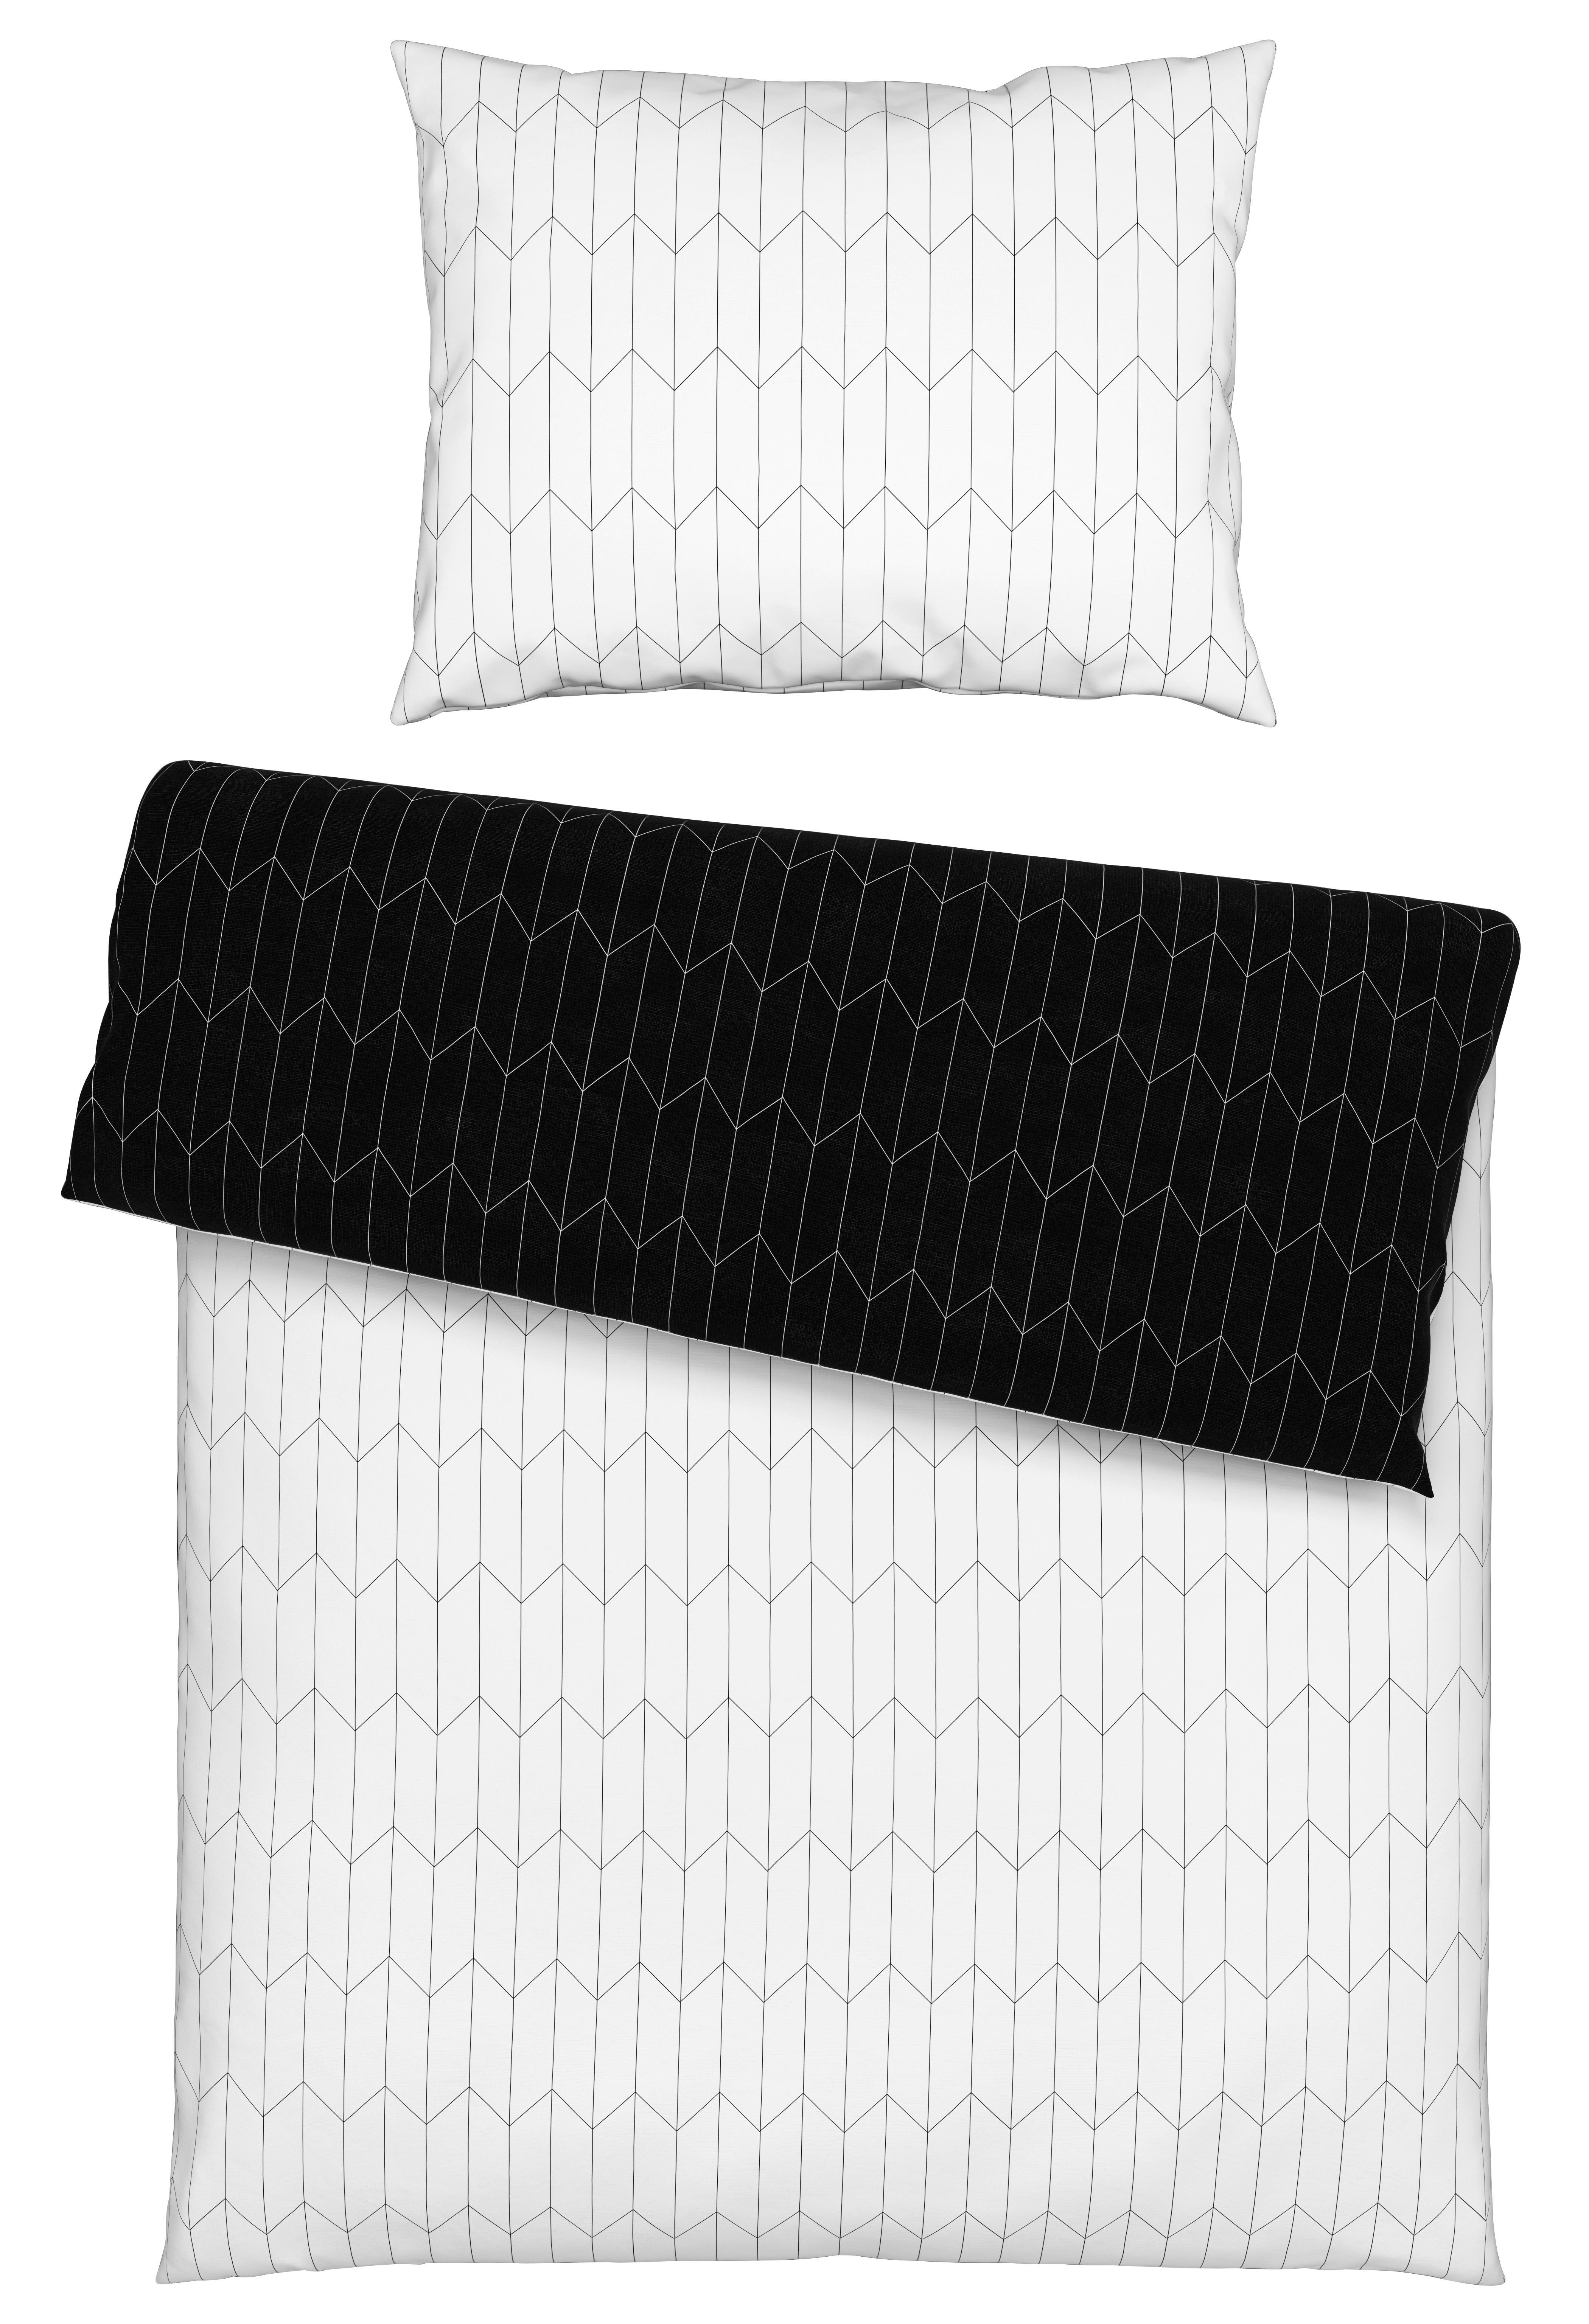 Posteľná Bielizeň Tegola, 140/200cm - čierna/biela, Moderný, textil (140/200cm) - Modern Living